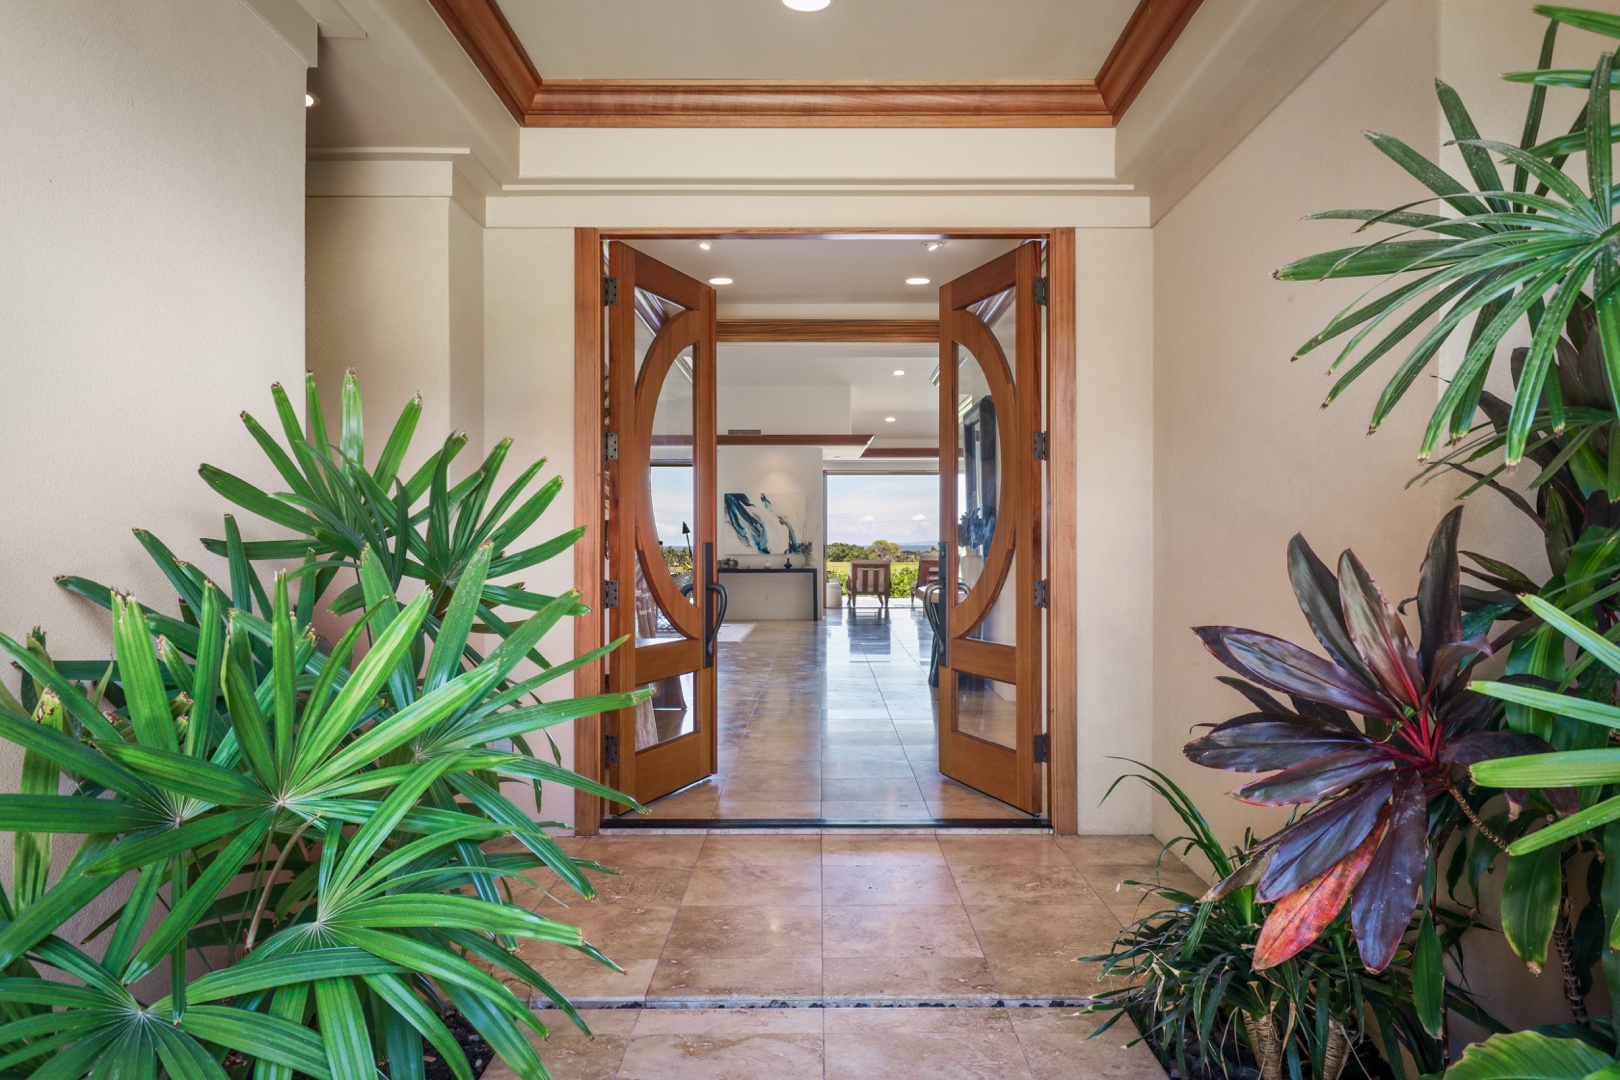 Kailua Kona Vacation Rentals, 4BD Pakui Street (147) Estate Home at Four Seasons Resort at Hualalai - Custom architectural interior entryway.